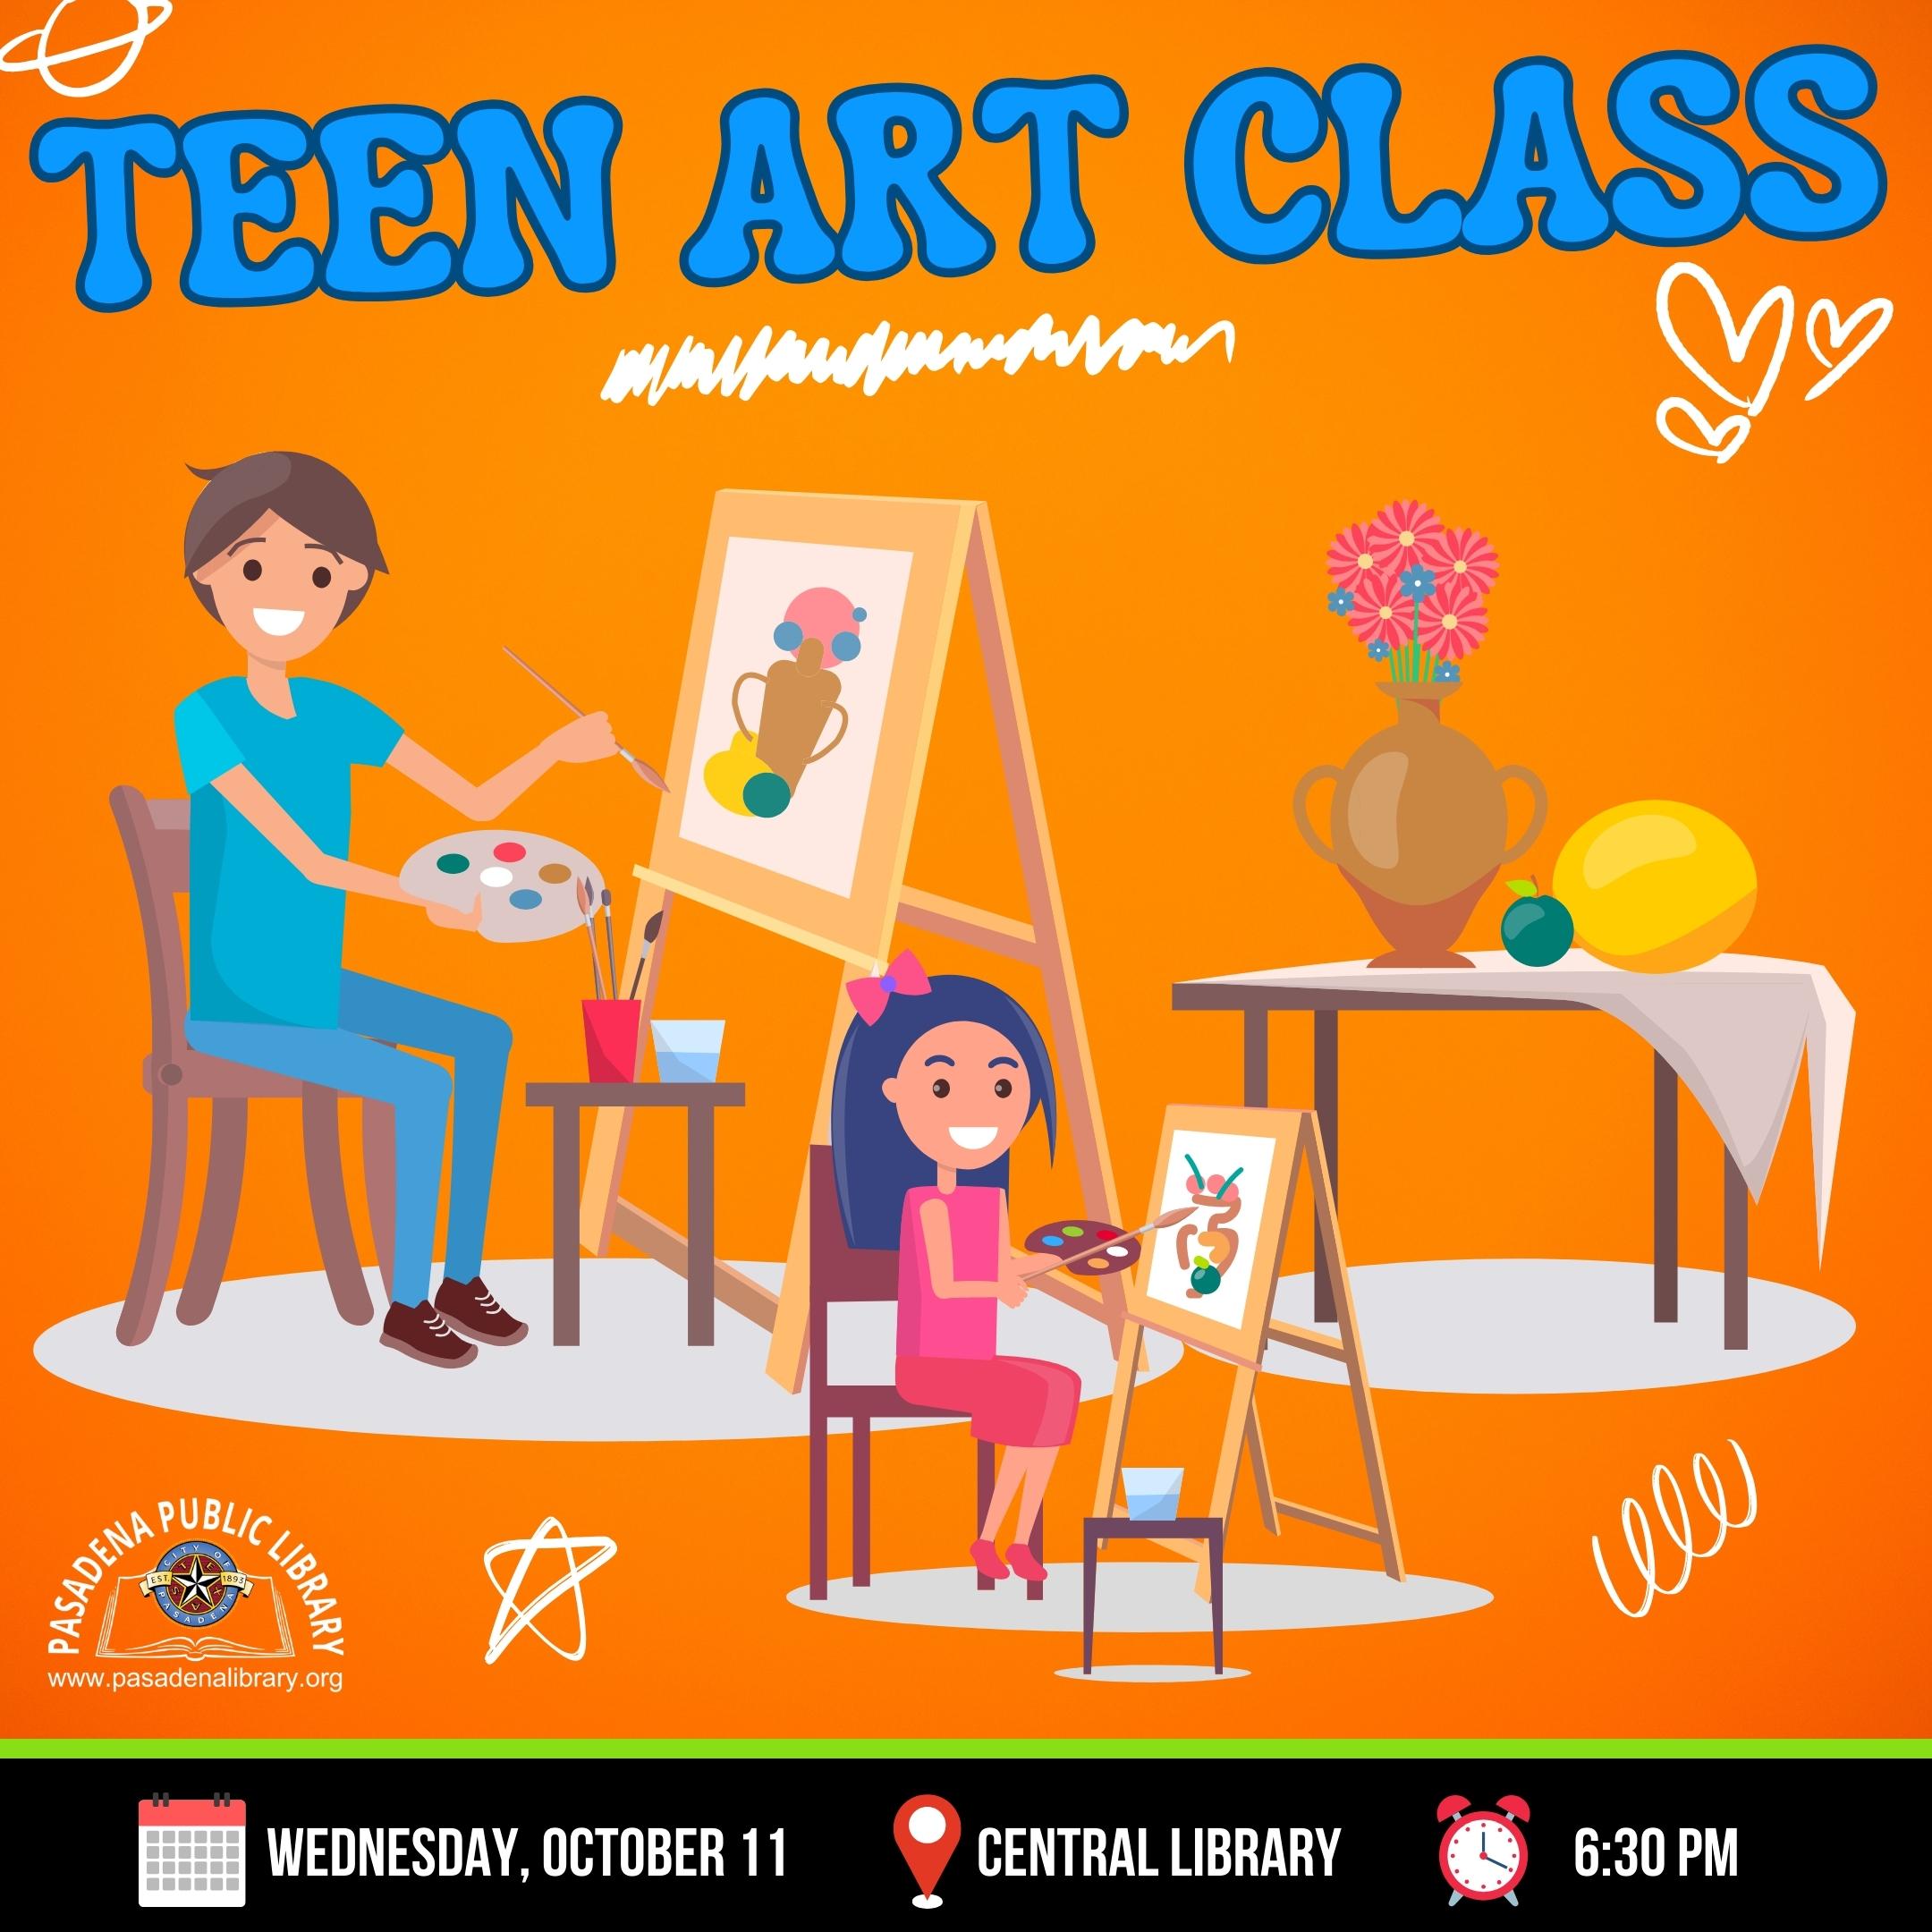 TEEN ART CLASS